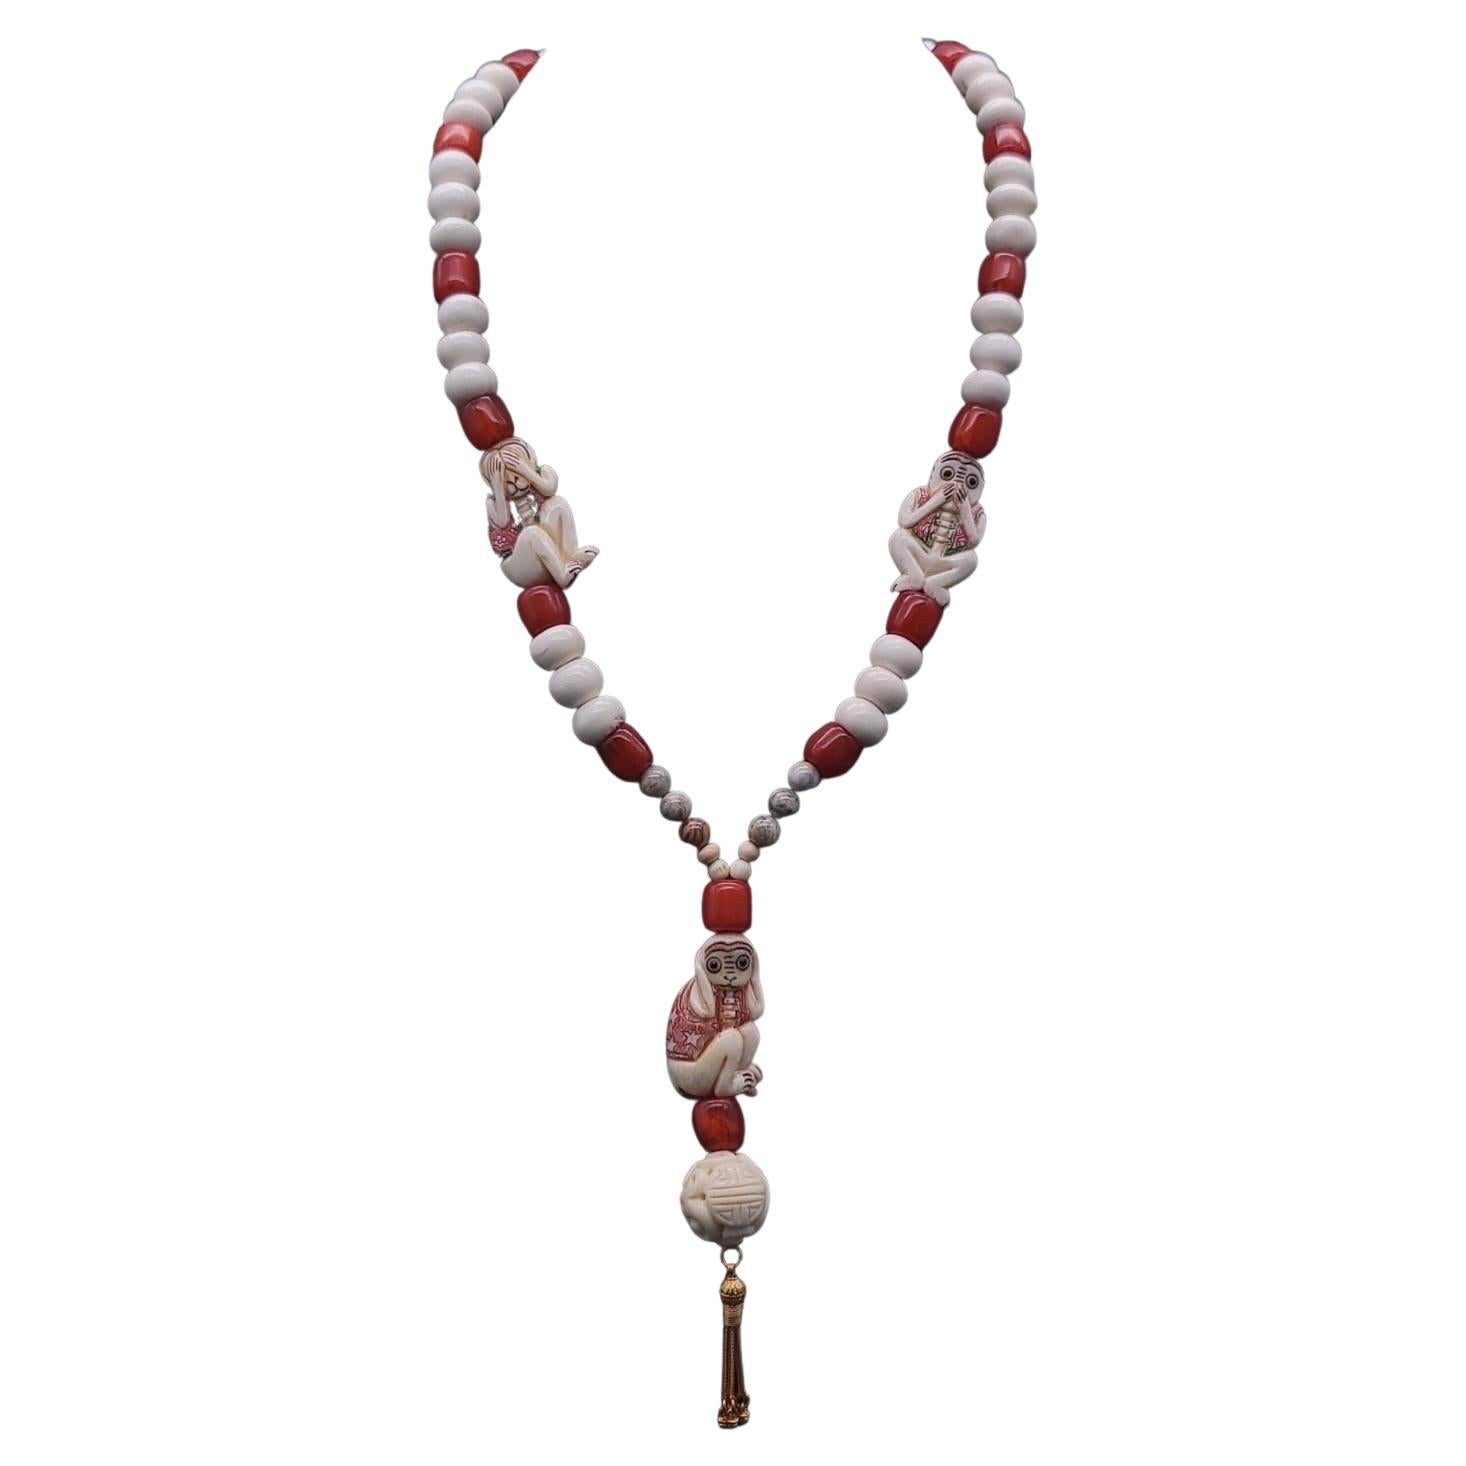 A.Jeschel 3 Wise monkeys in a Long Red Copal necklace  For Sale